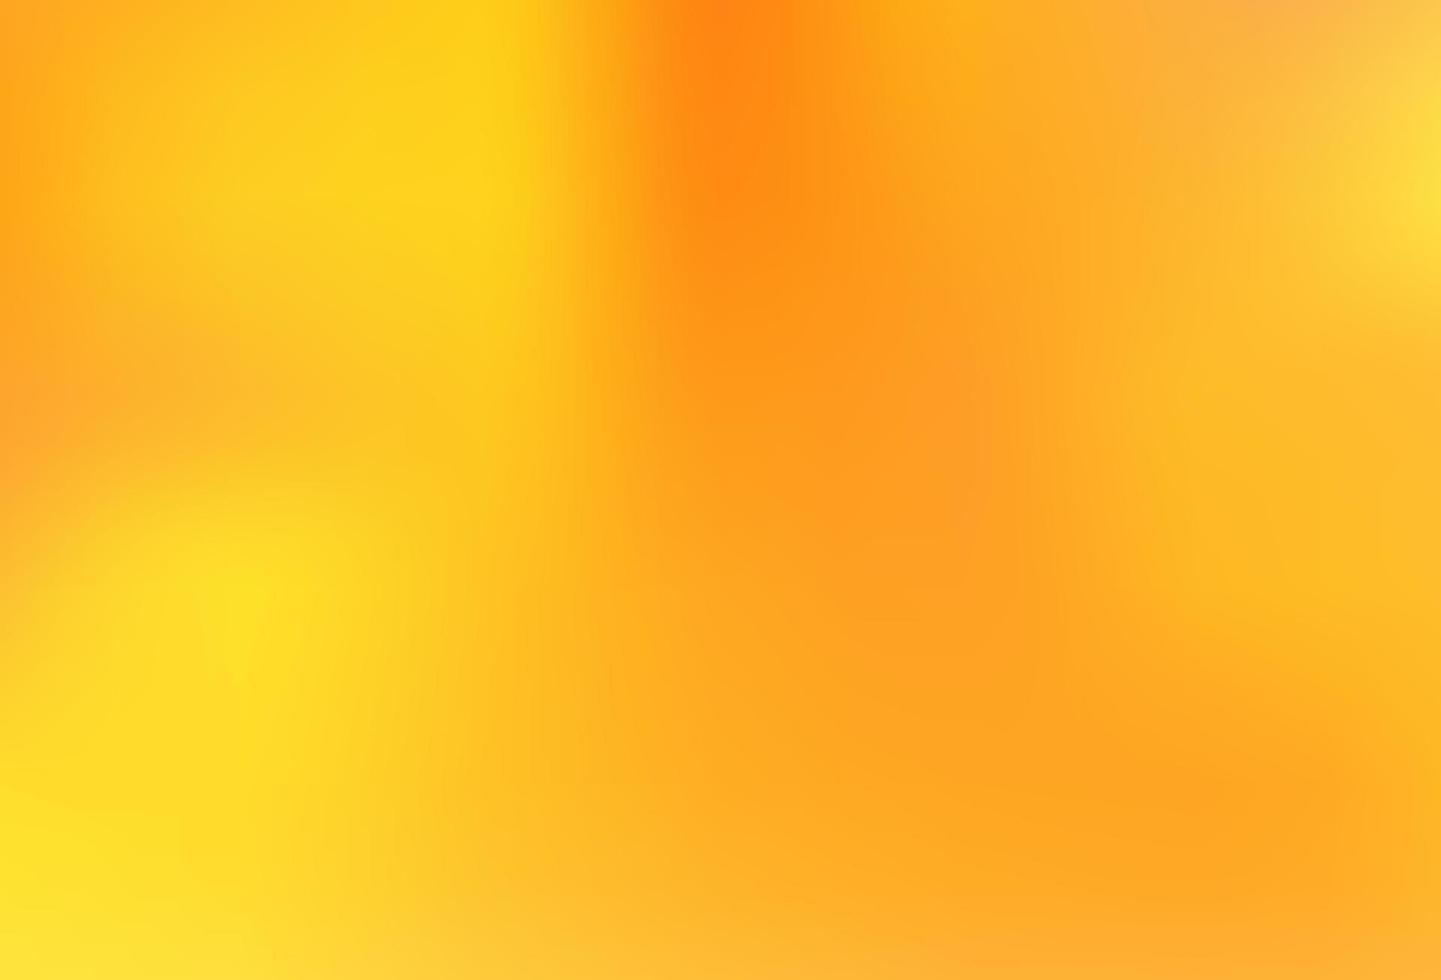 sfondo astratto lucido vettoriale arancione chiaro.